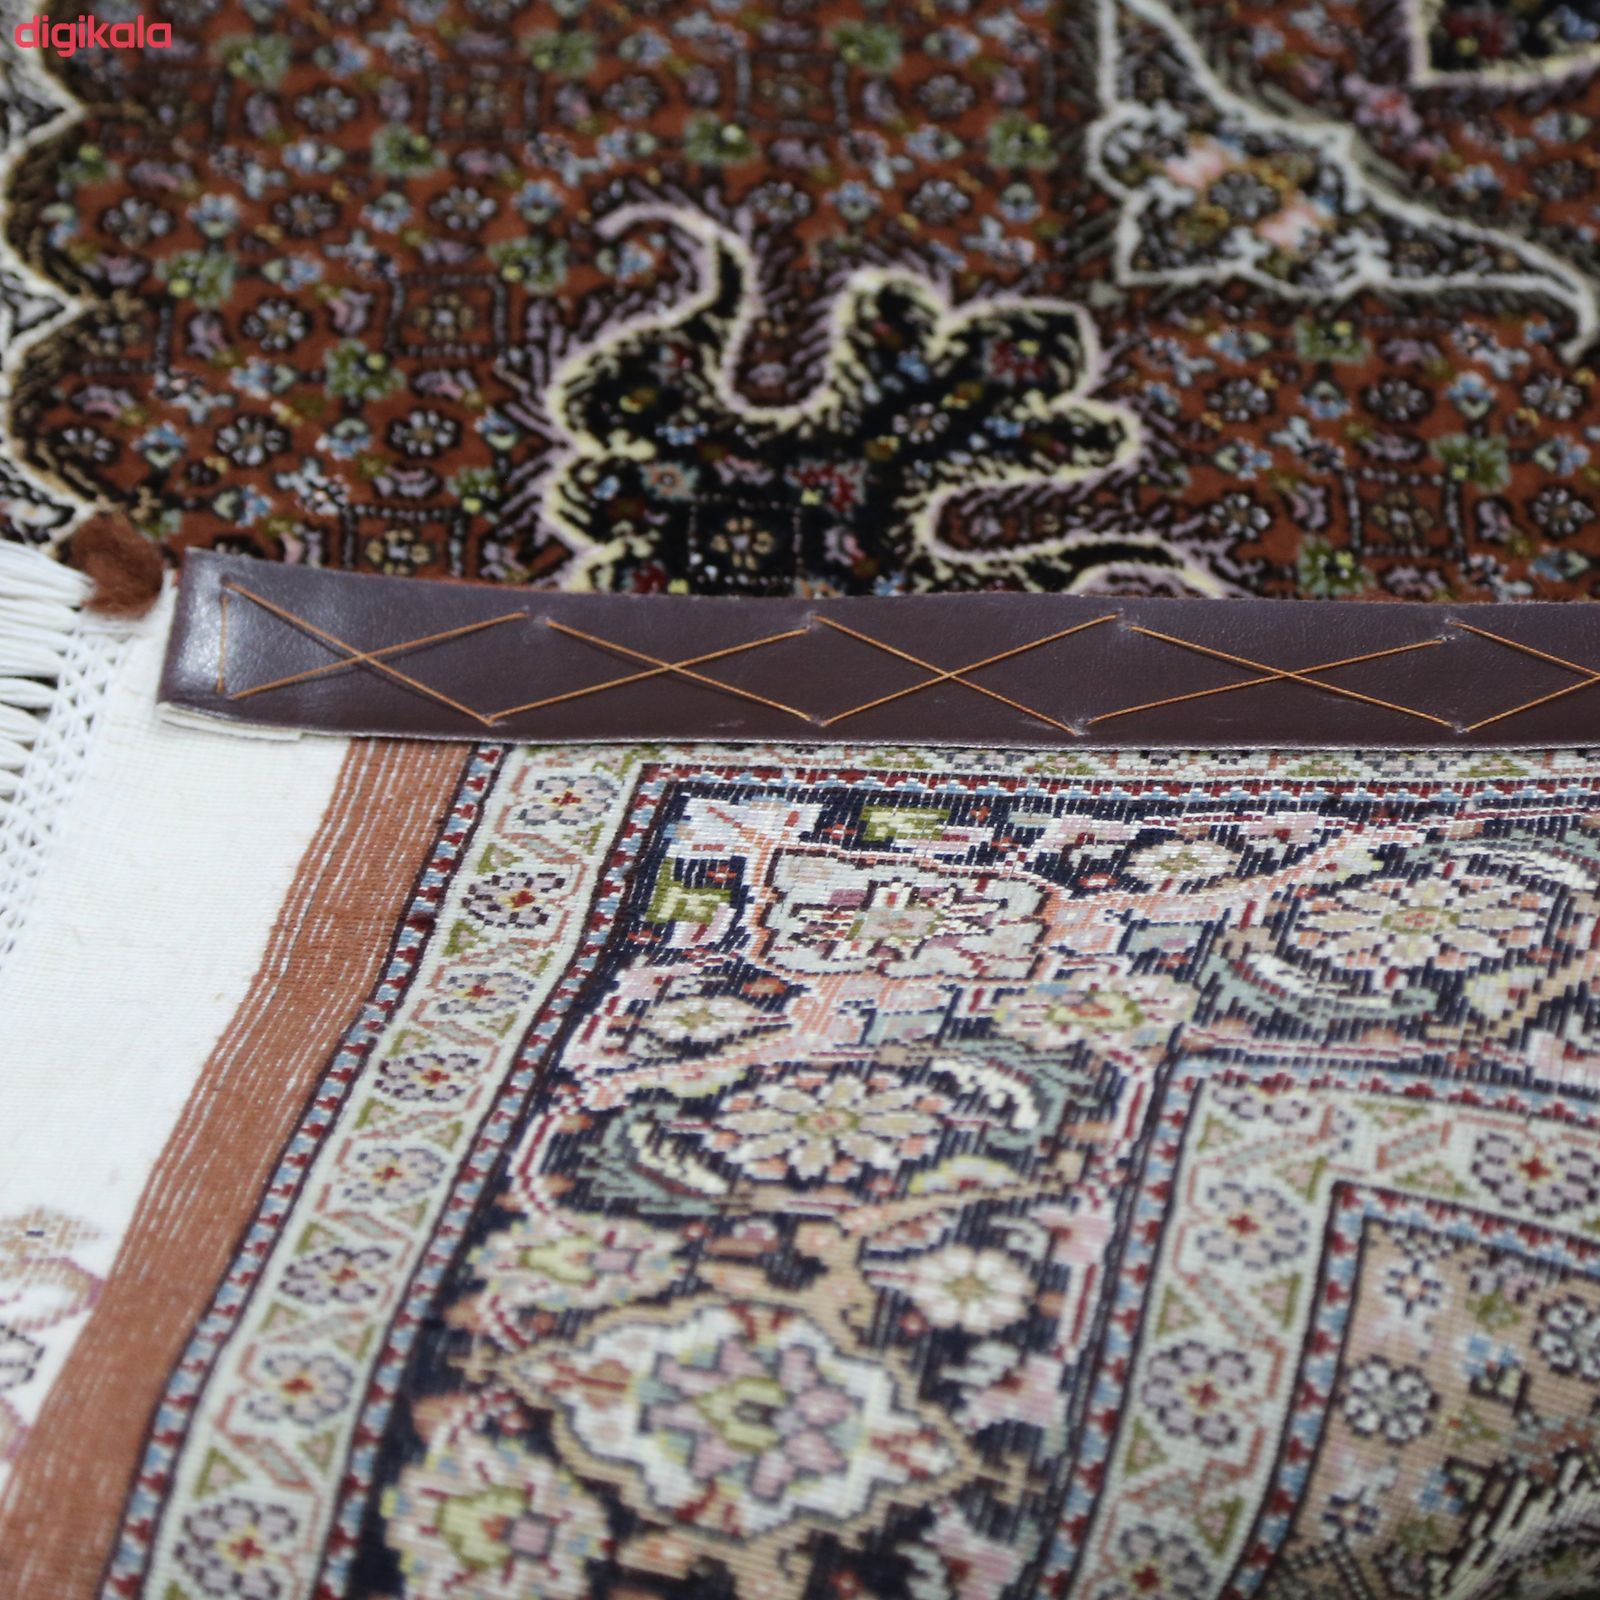  خرید اینترنتی با تخفیف ویژه فرش دستباف یک و نیم متری مدل ماهی تبریز کد ۹۹۹۹۰